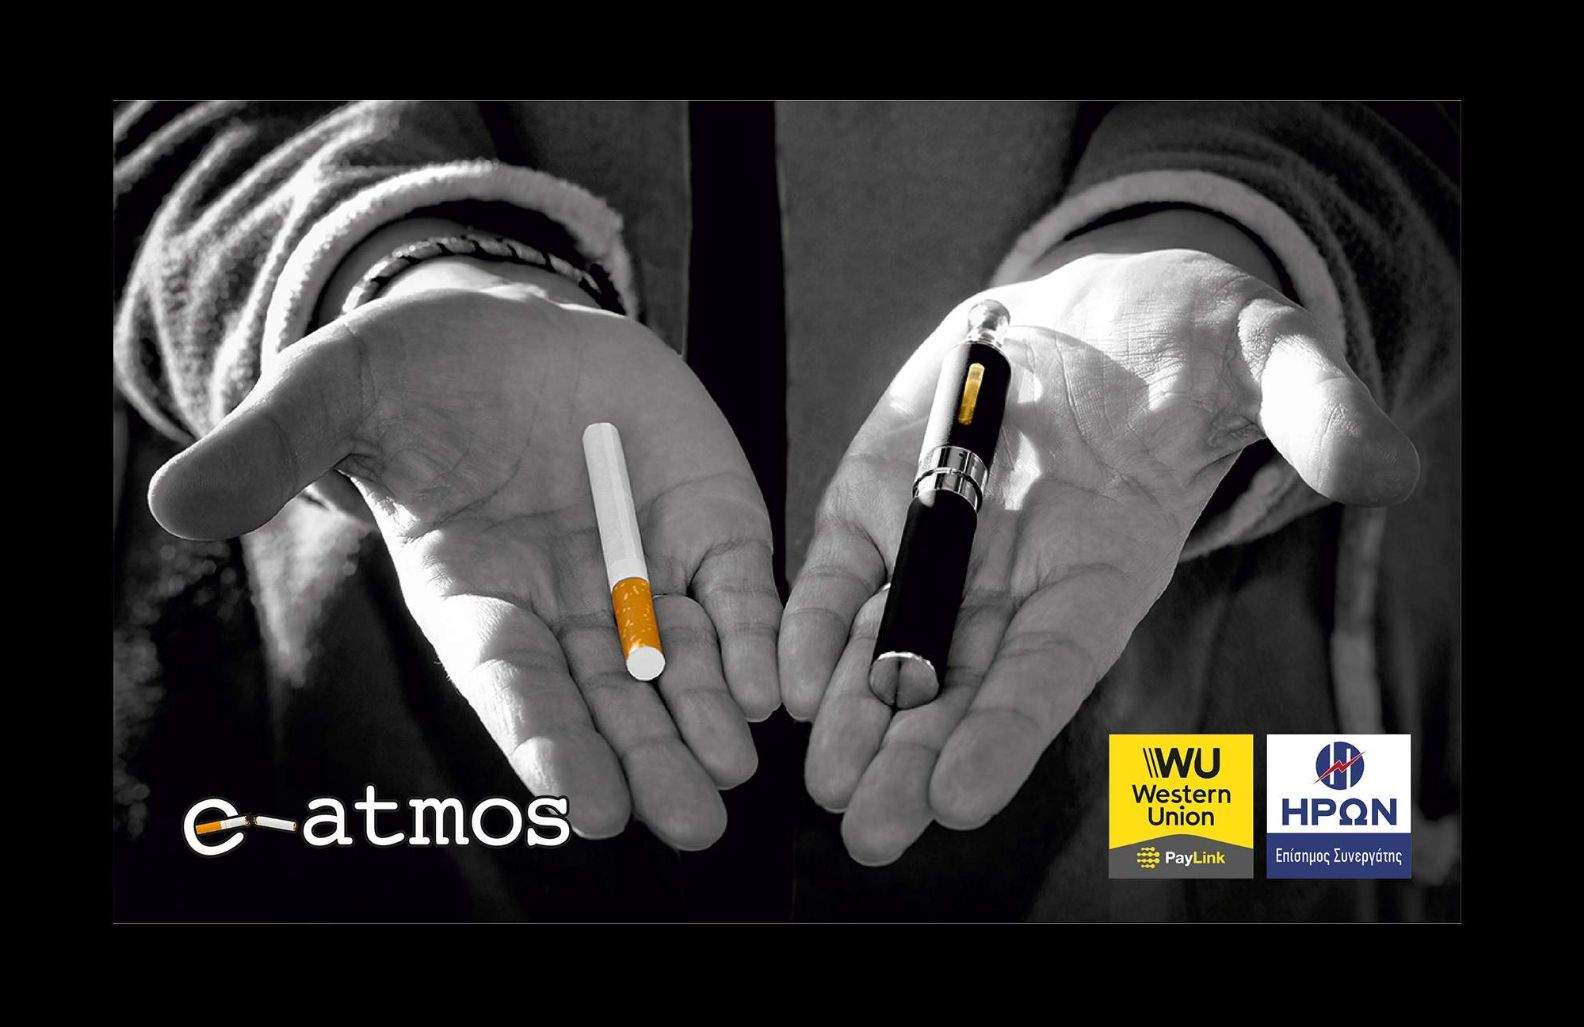 ηλεκτρονικό τσιγάρο γρεβενά | e-atmos | Ηρων | Western Union